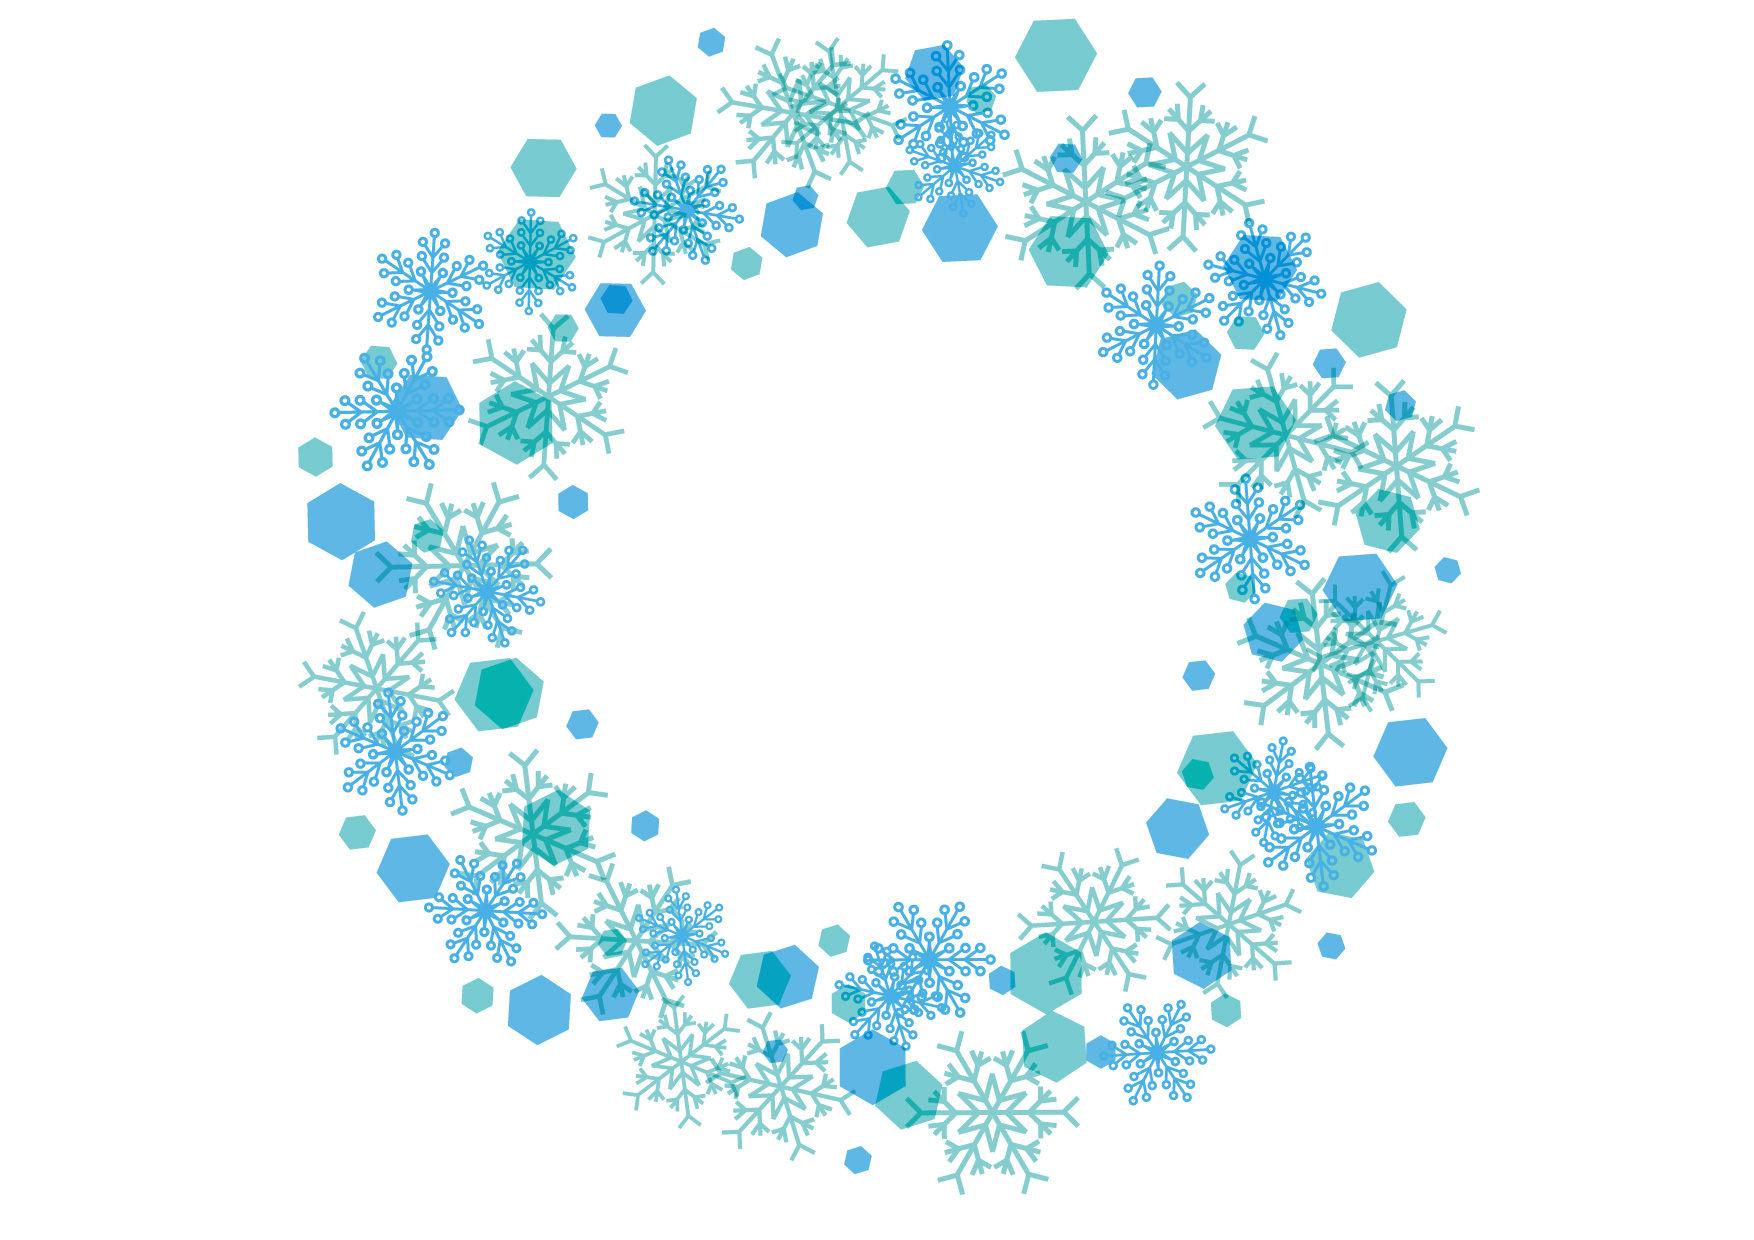 可愛いイラスト無料 雪の結晶 フレーム 背景 青色 Free Illustration Snowflakes Frame Background Blue イラストダウンロード